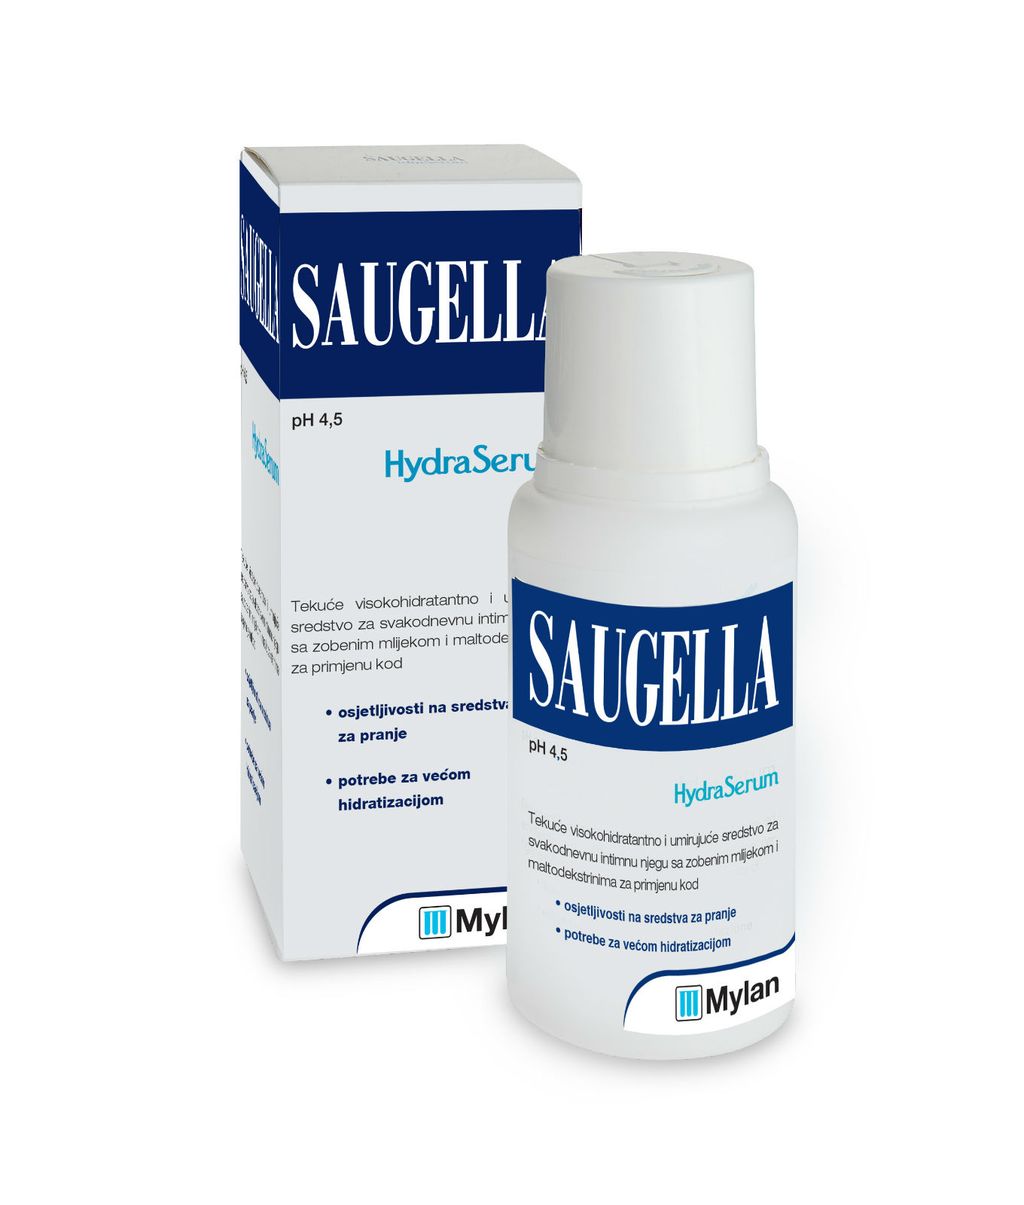 Saugella HydraSerum namijenjen je ženama u menopauzi, ali i ostalim ženama koje pate od neugodnih simptoma vaginalne suhoće